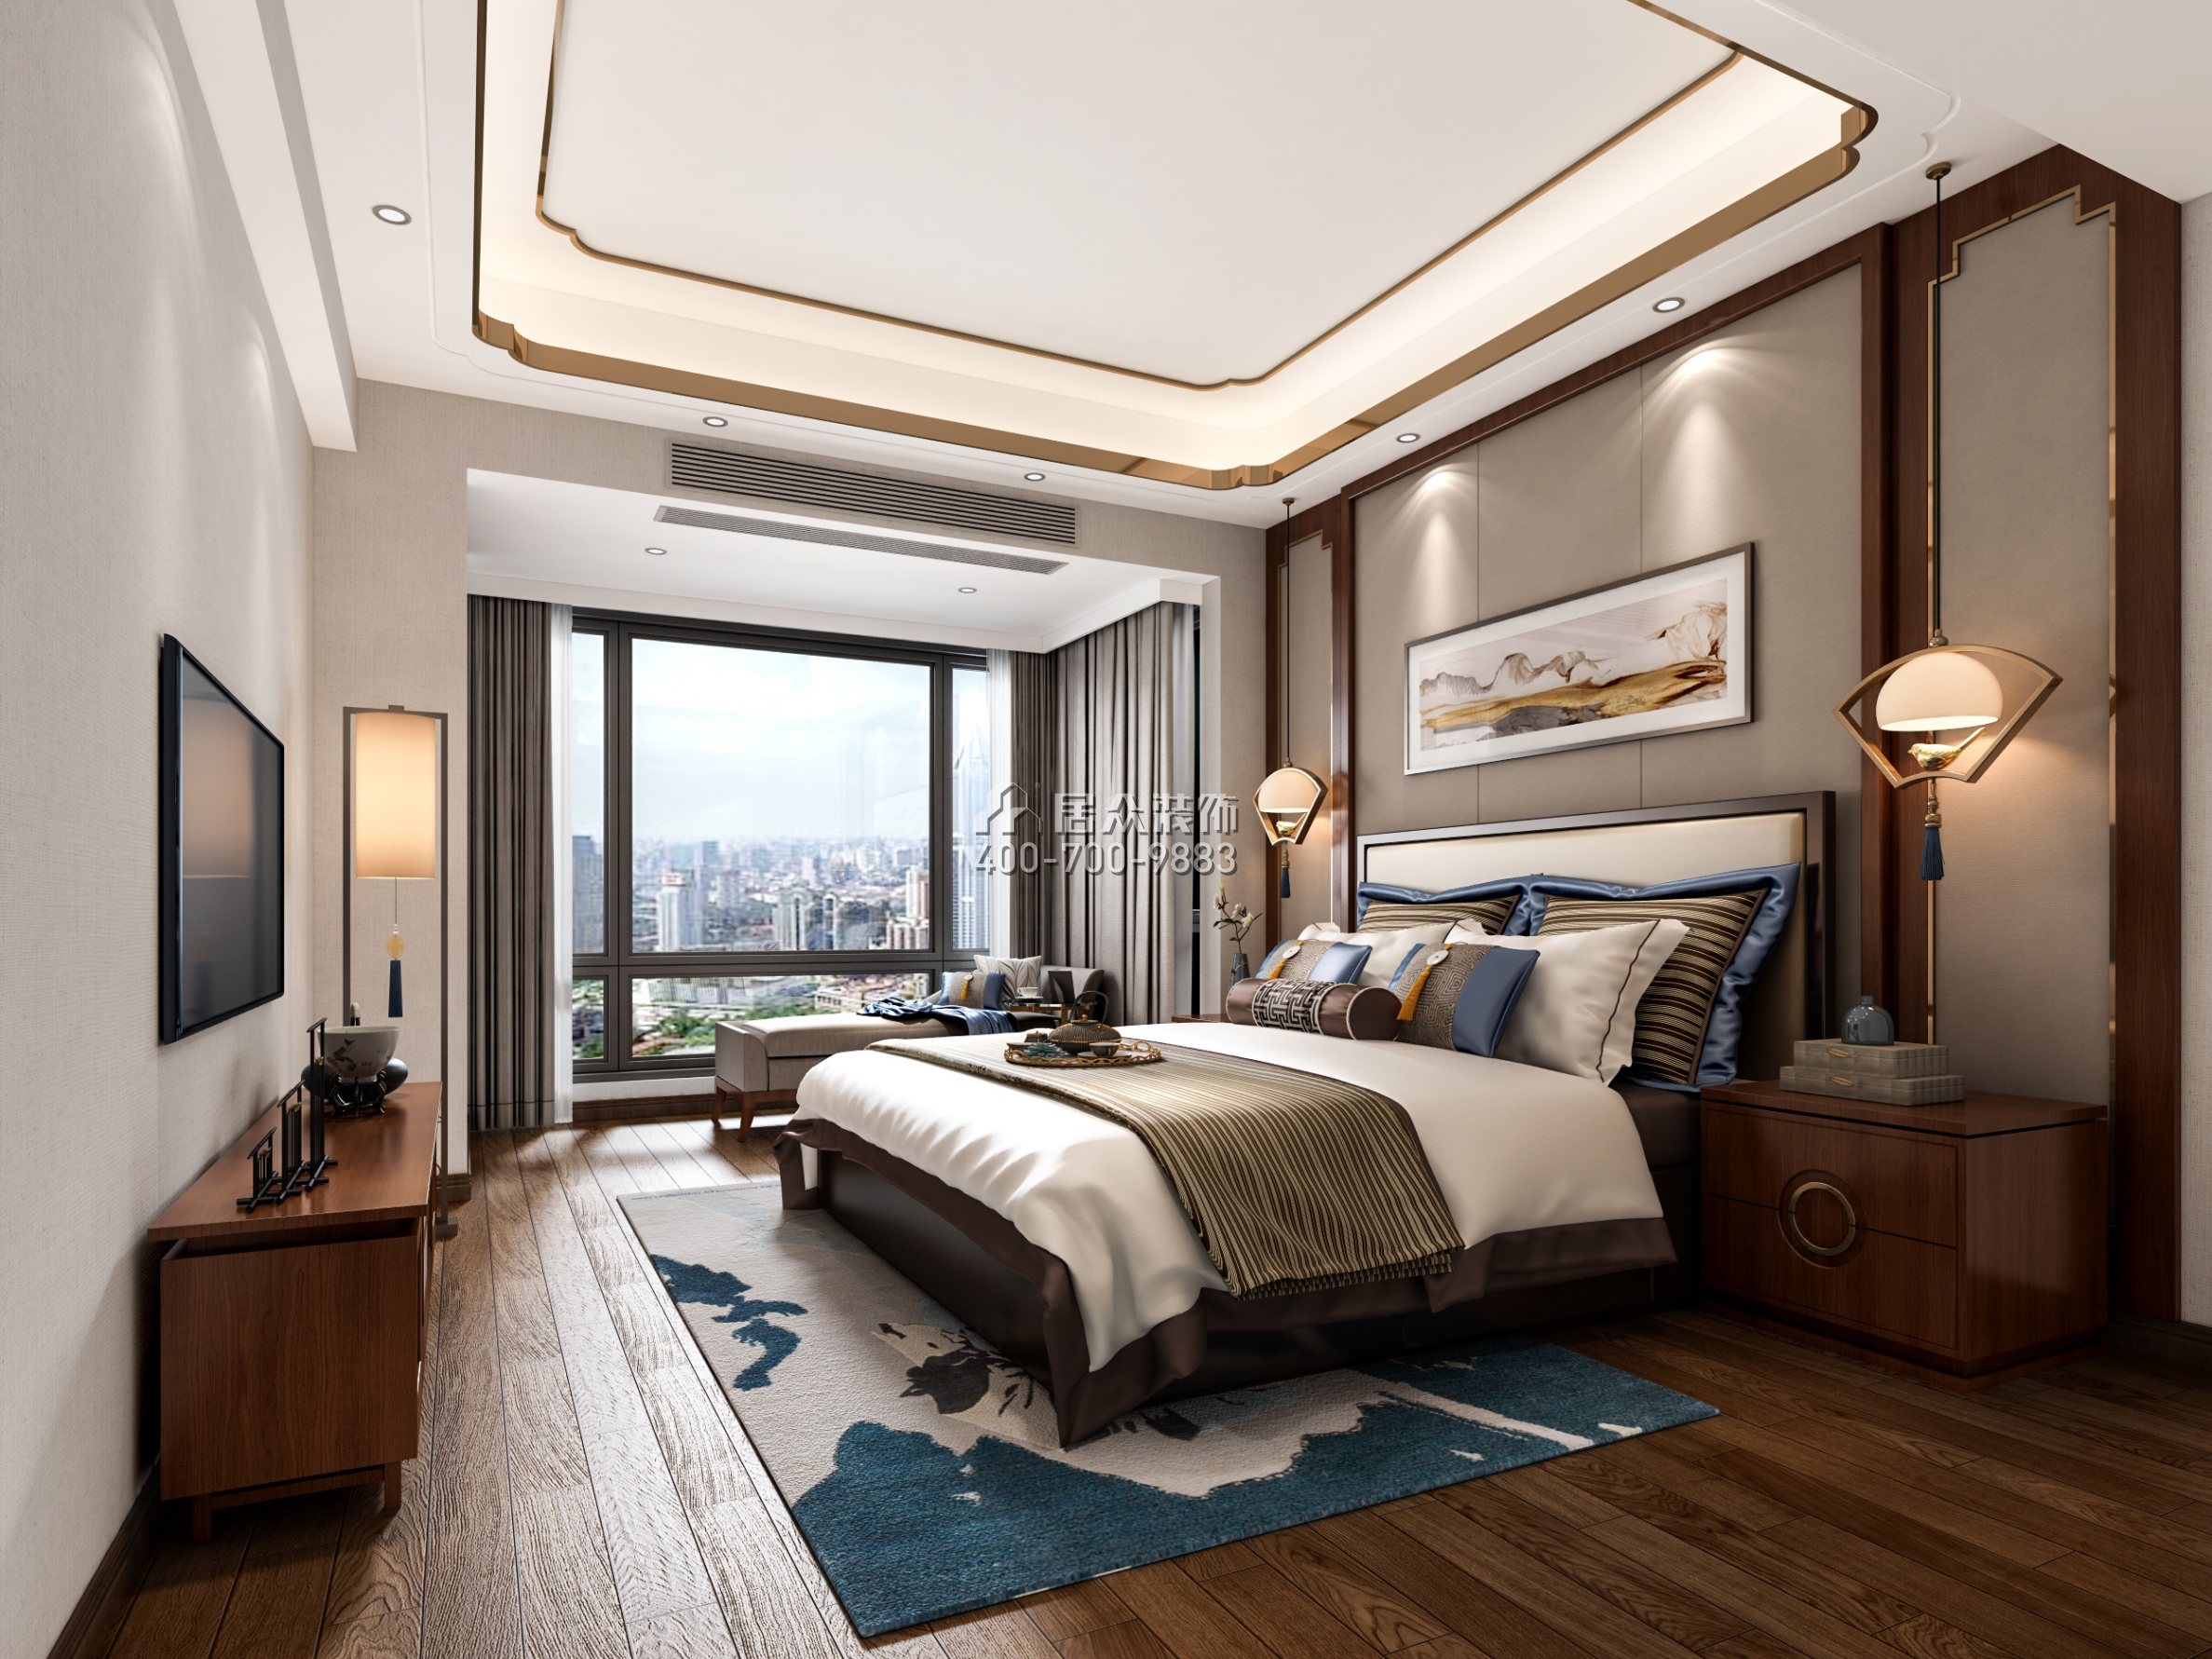 南头大厦268平方米中式风格复式户型卧室装修效果图